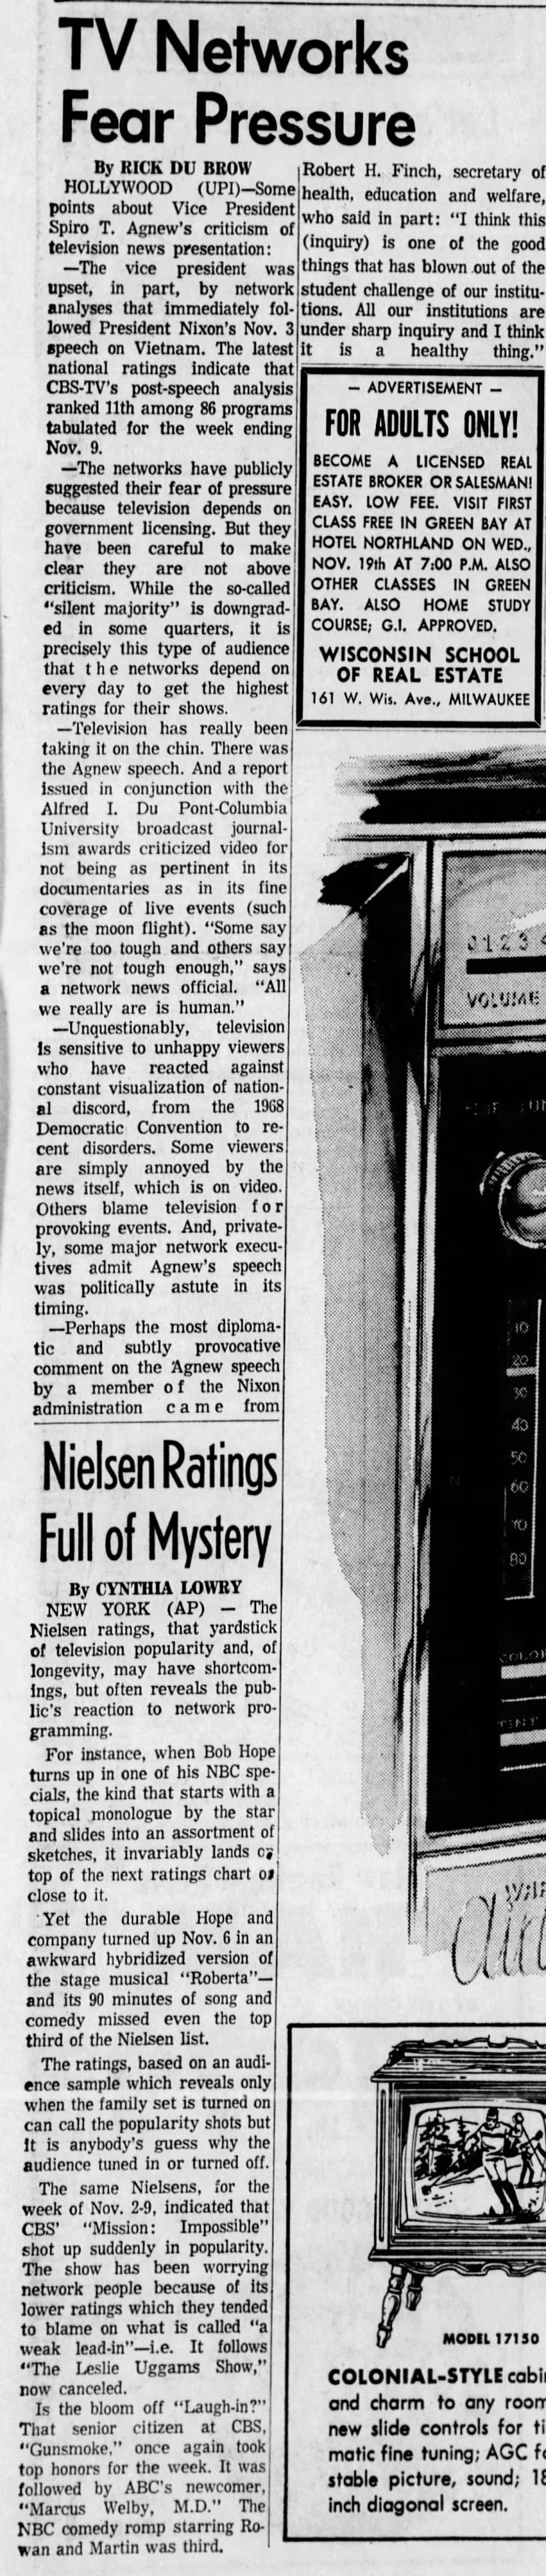 Nielsen ratings November 3rd-9th, 1969